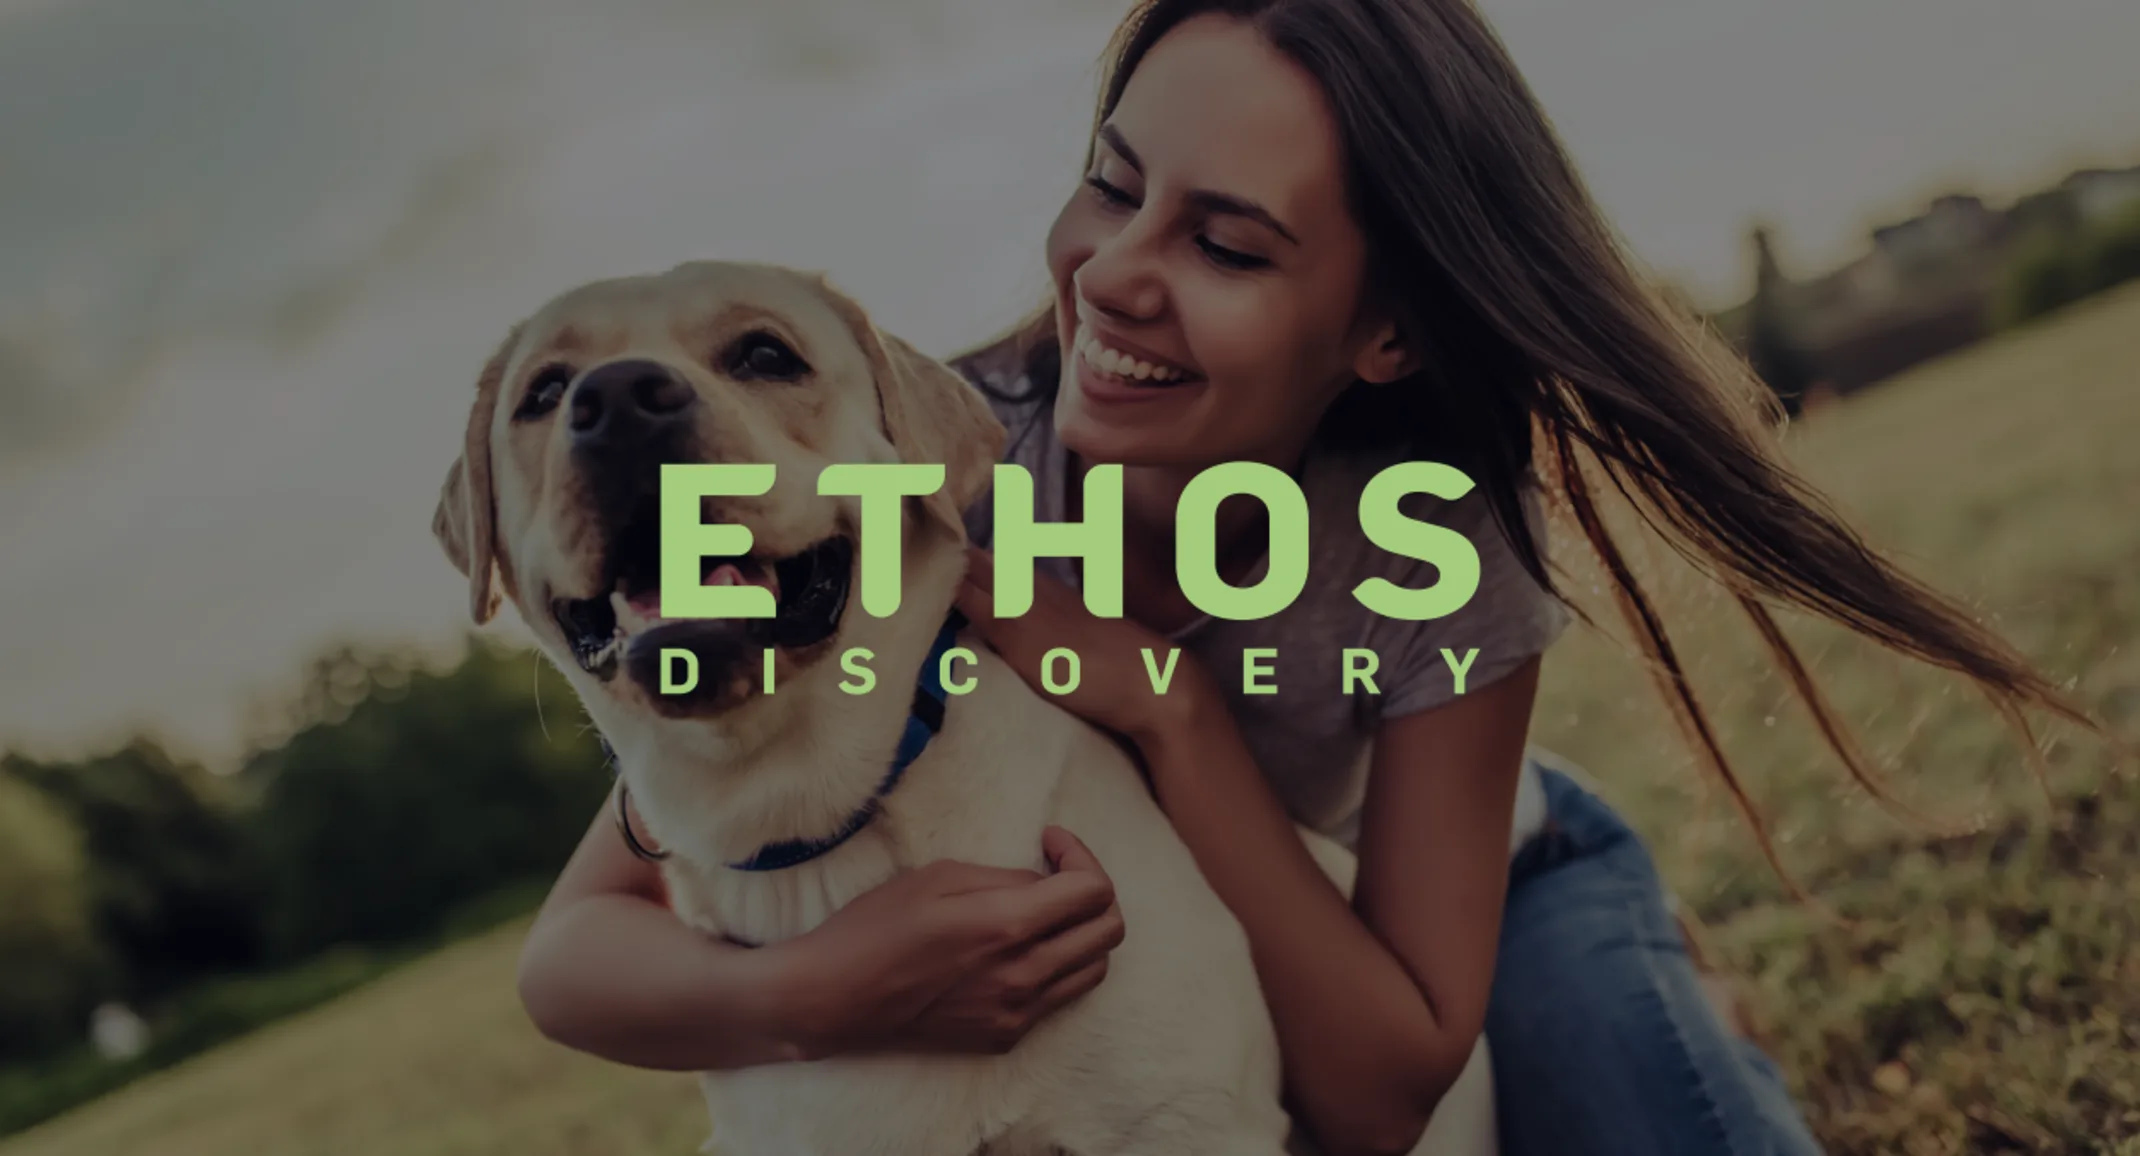 NVA Logo, NVA Announces $10 Million Donation to Ethos Discovery,  Ethos Discovery logo